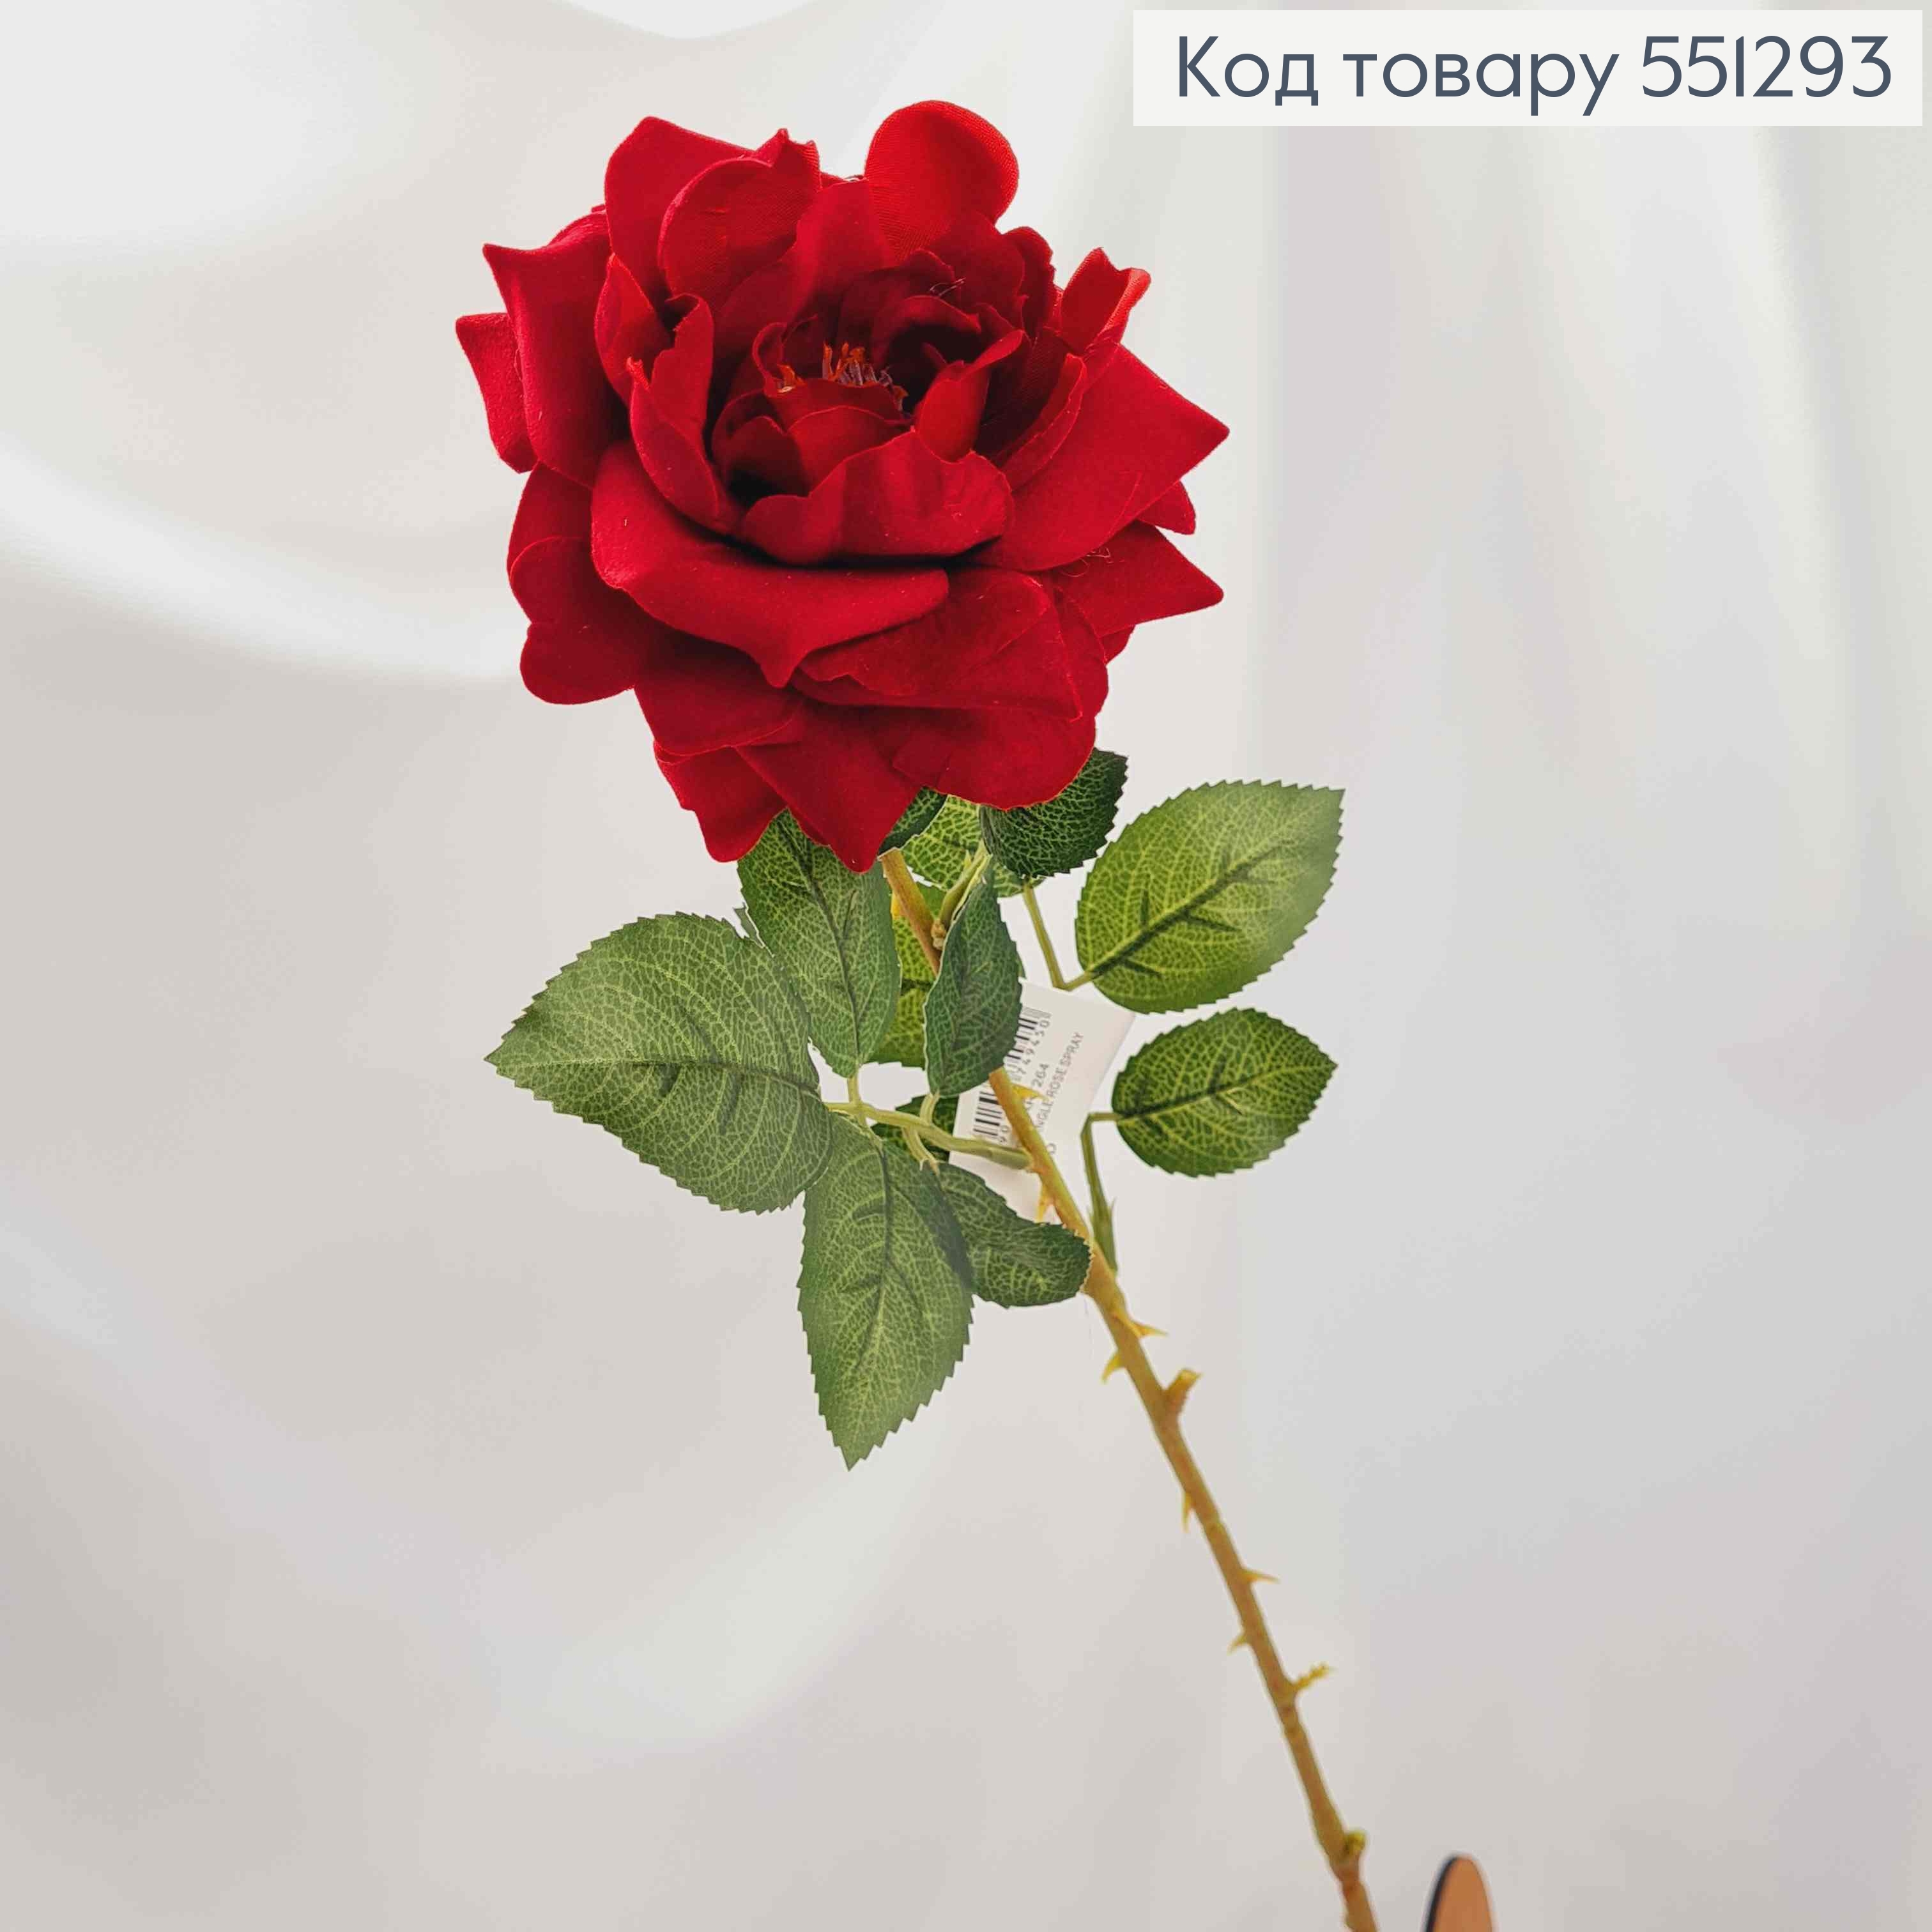 Искуственный цветок, КРАСНАЯ роза 10см, бархатная,  на металлическом стержне, высотой 62см. 551293 фото 2